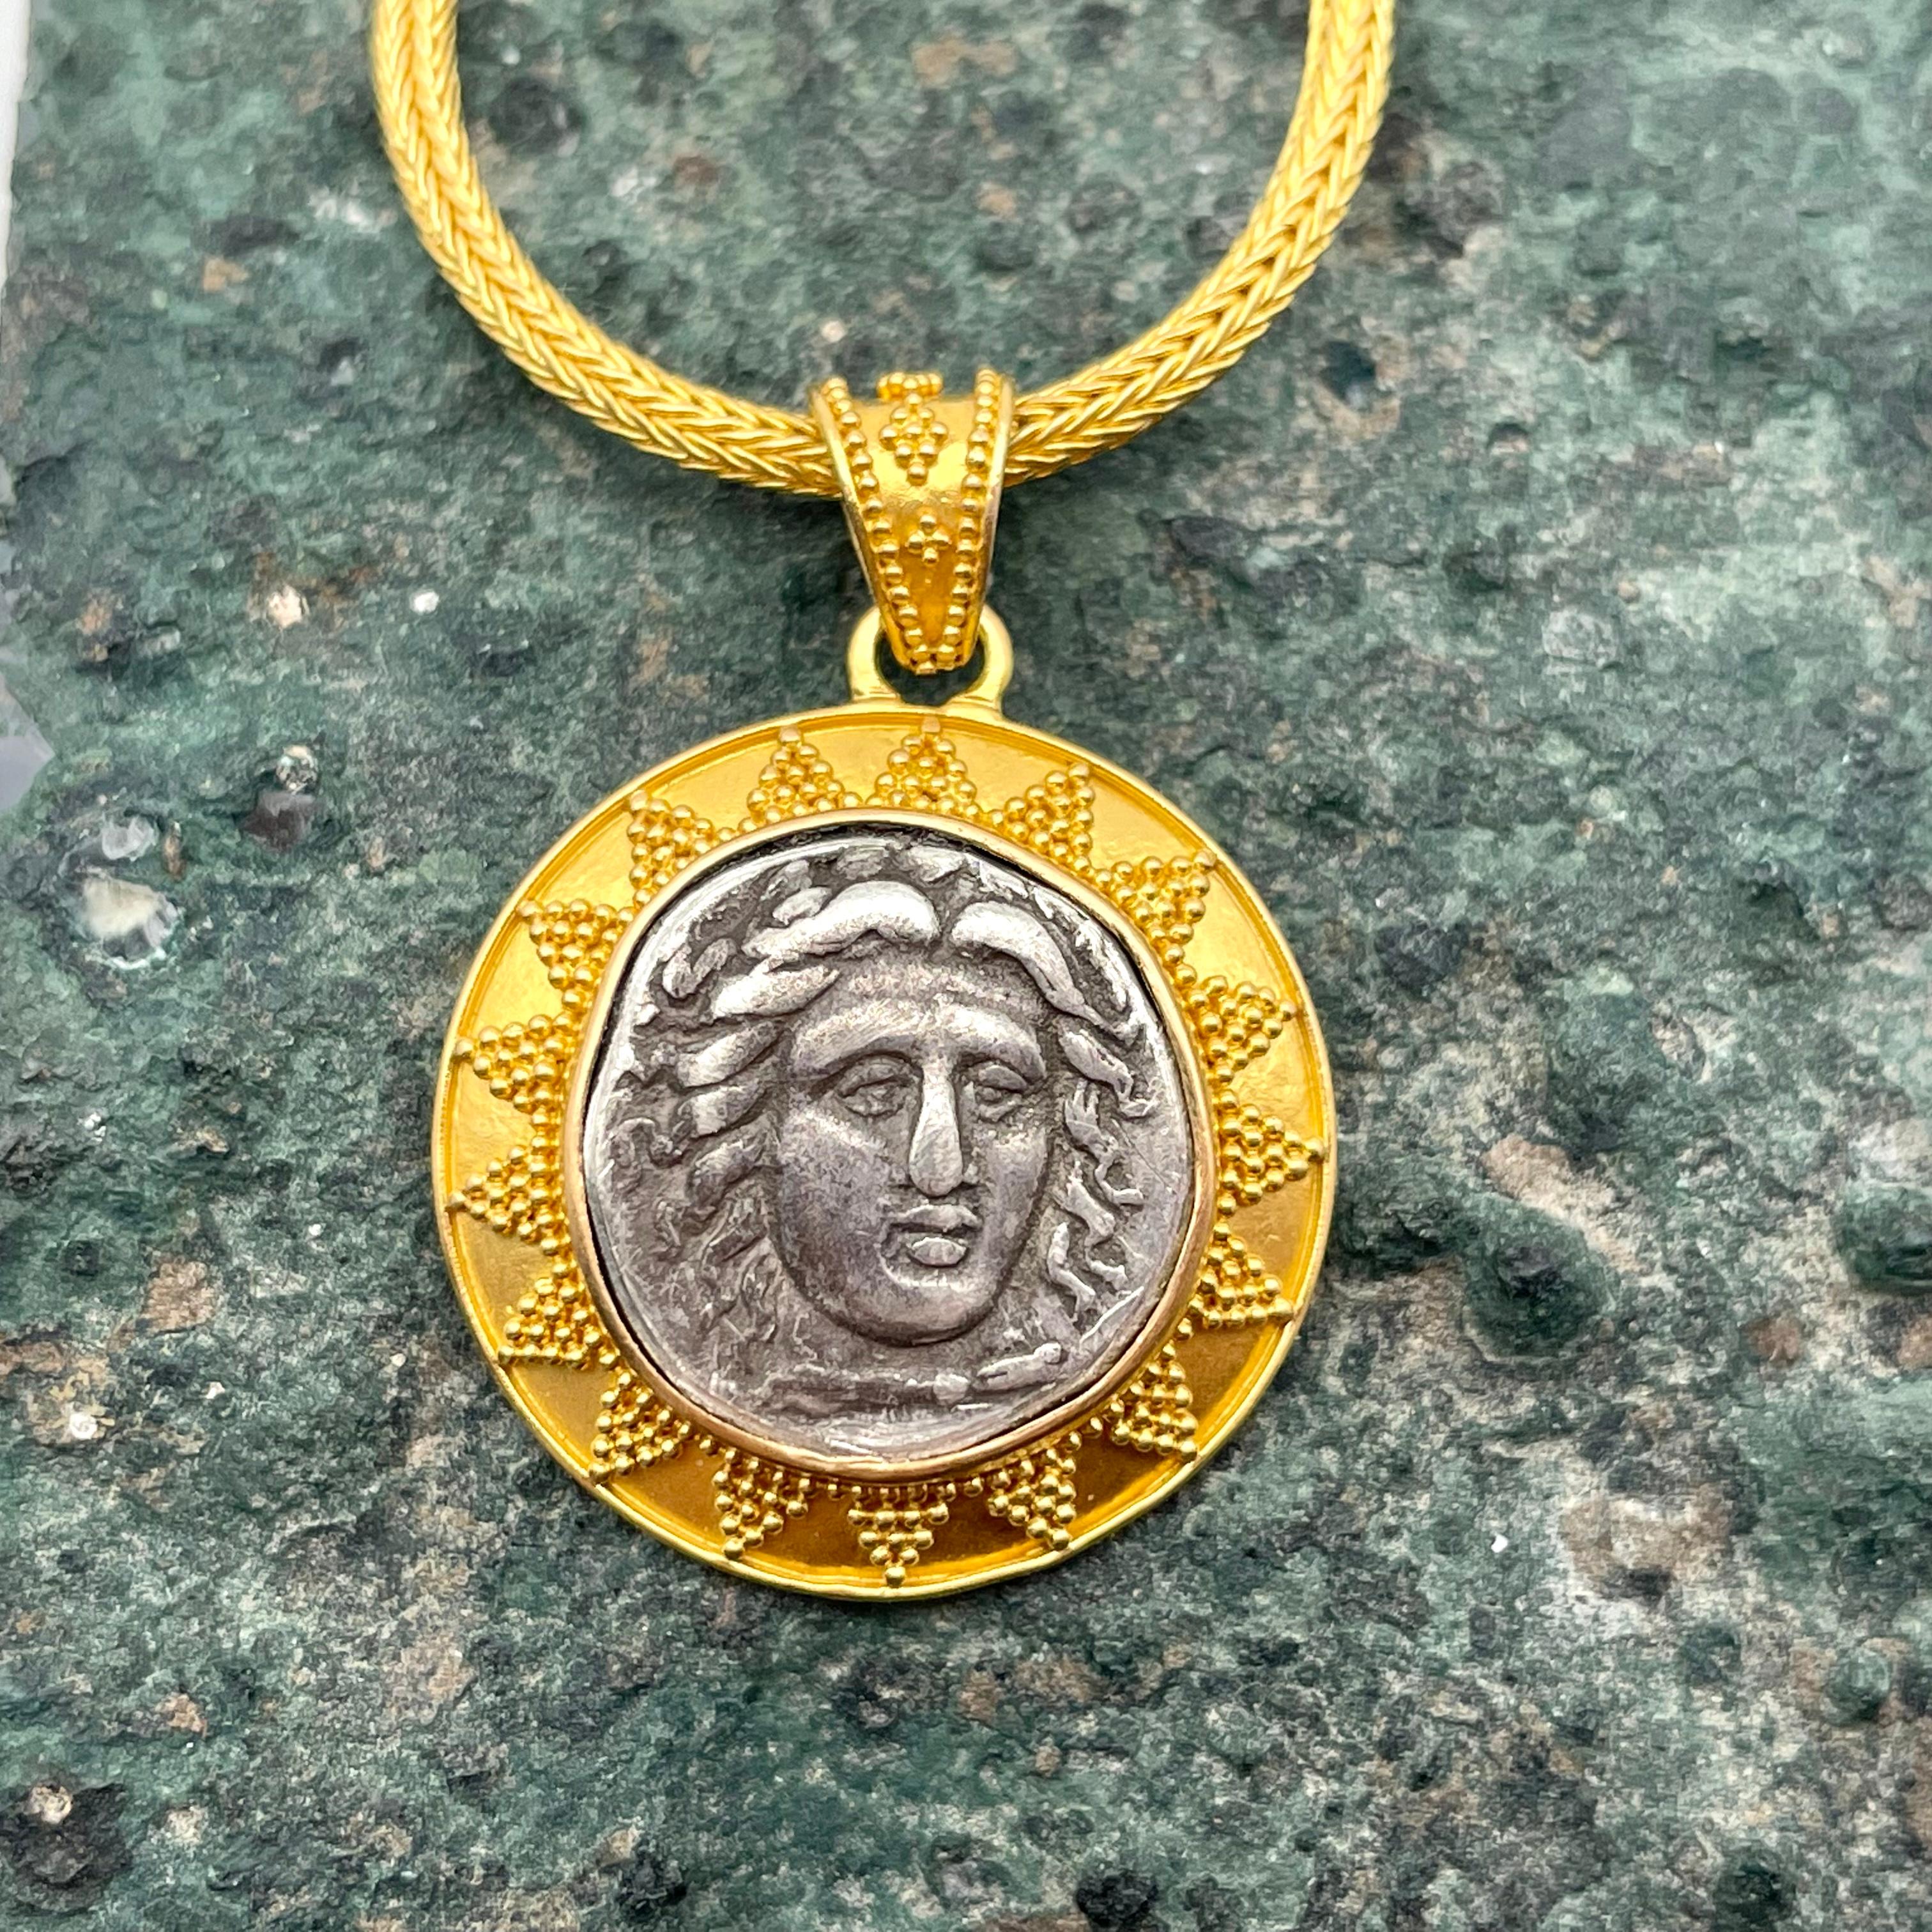 22k gold lion pendant